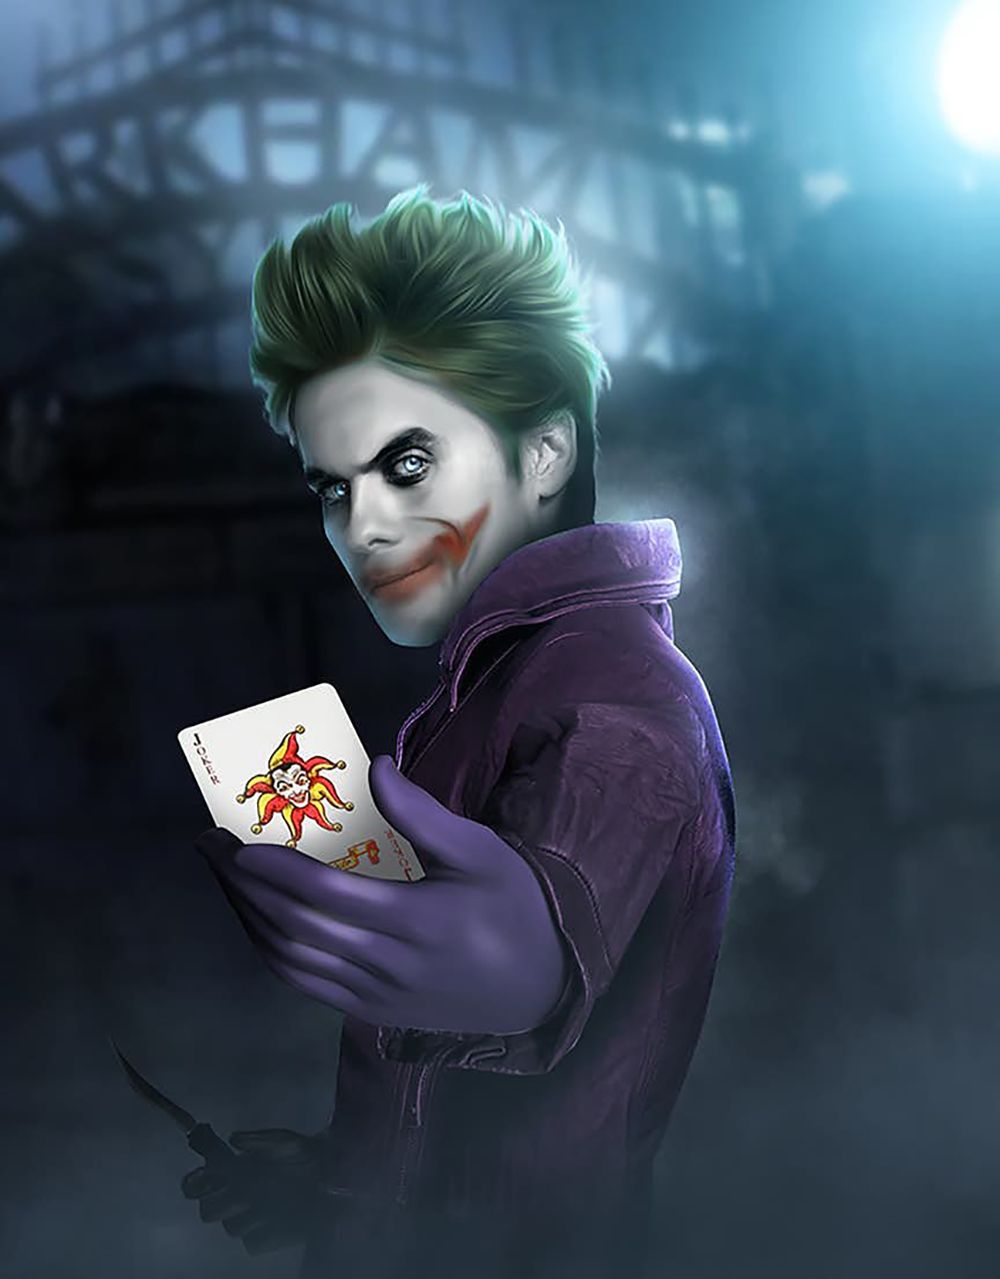 Bosslogic-The-Joker-Jared-Leto